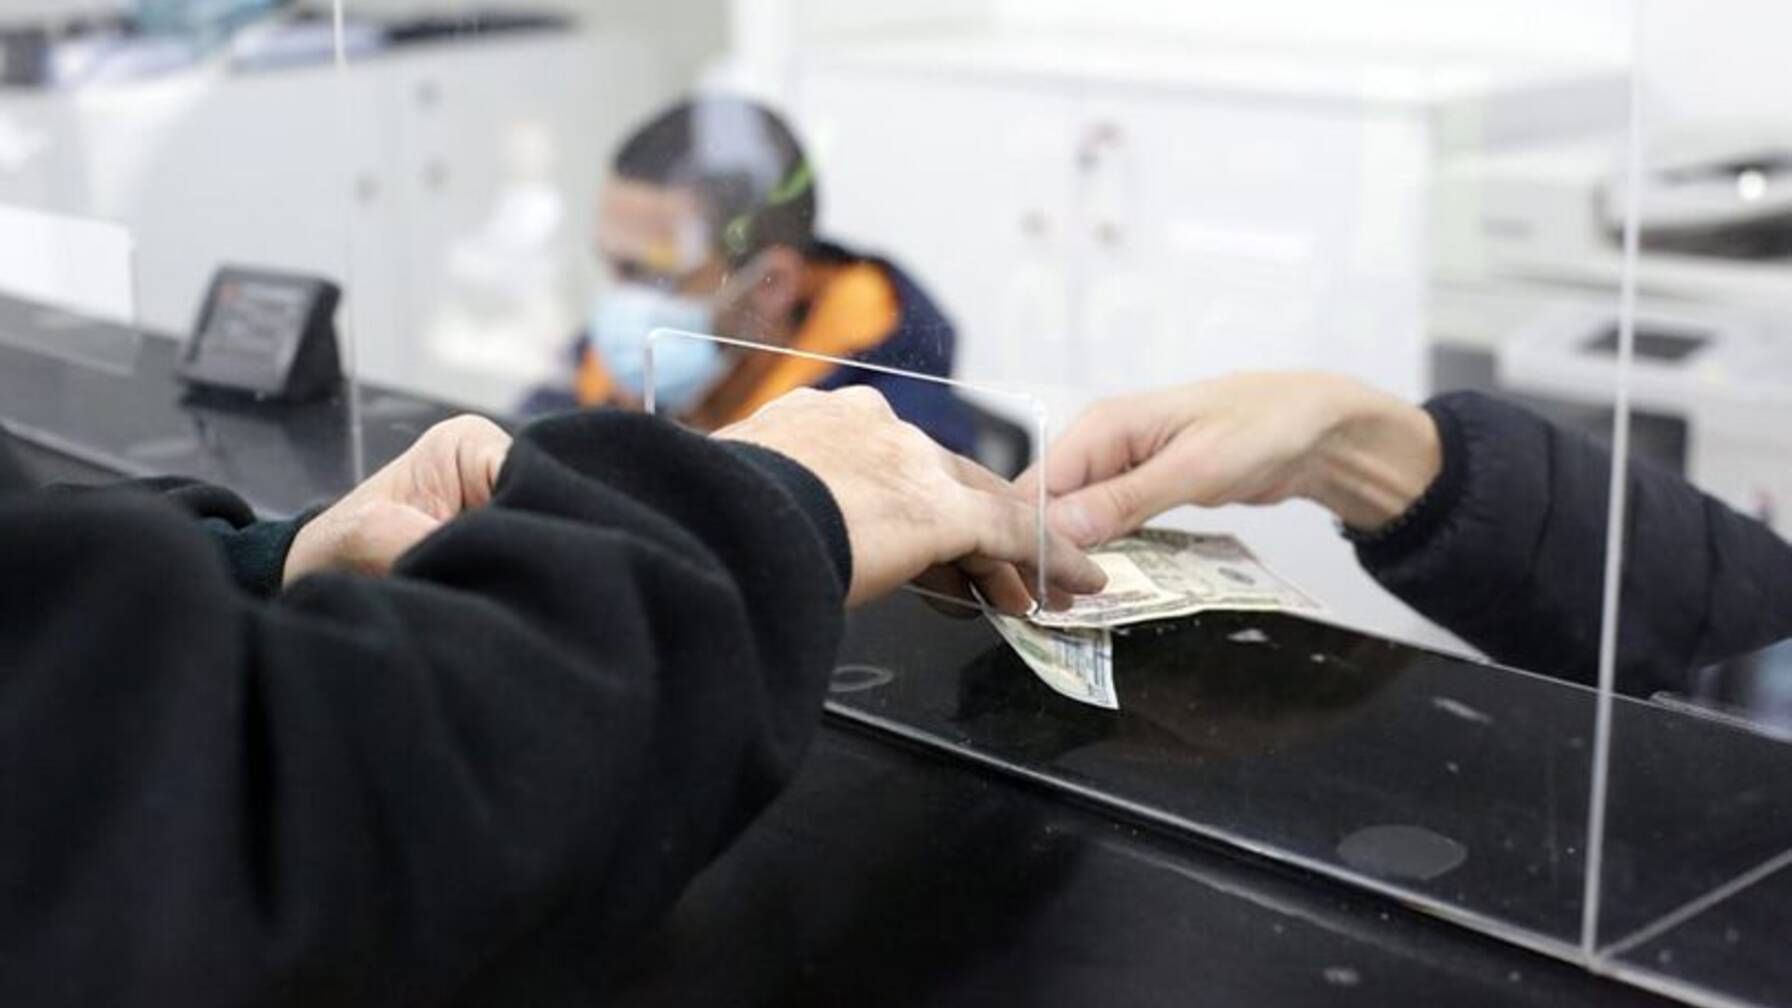 Youssef può ritirare gli aiuti in contanti di Caritas nella moneta forte, ossia il dollaro, direttamente presso un fornitore di servizi finanziari.